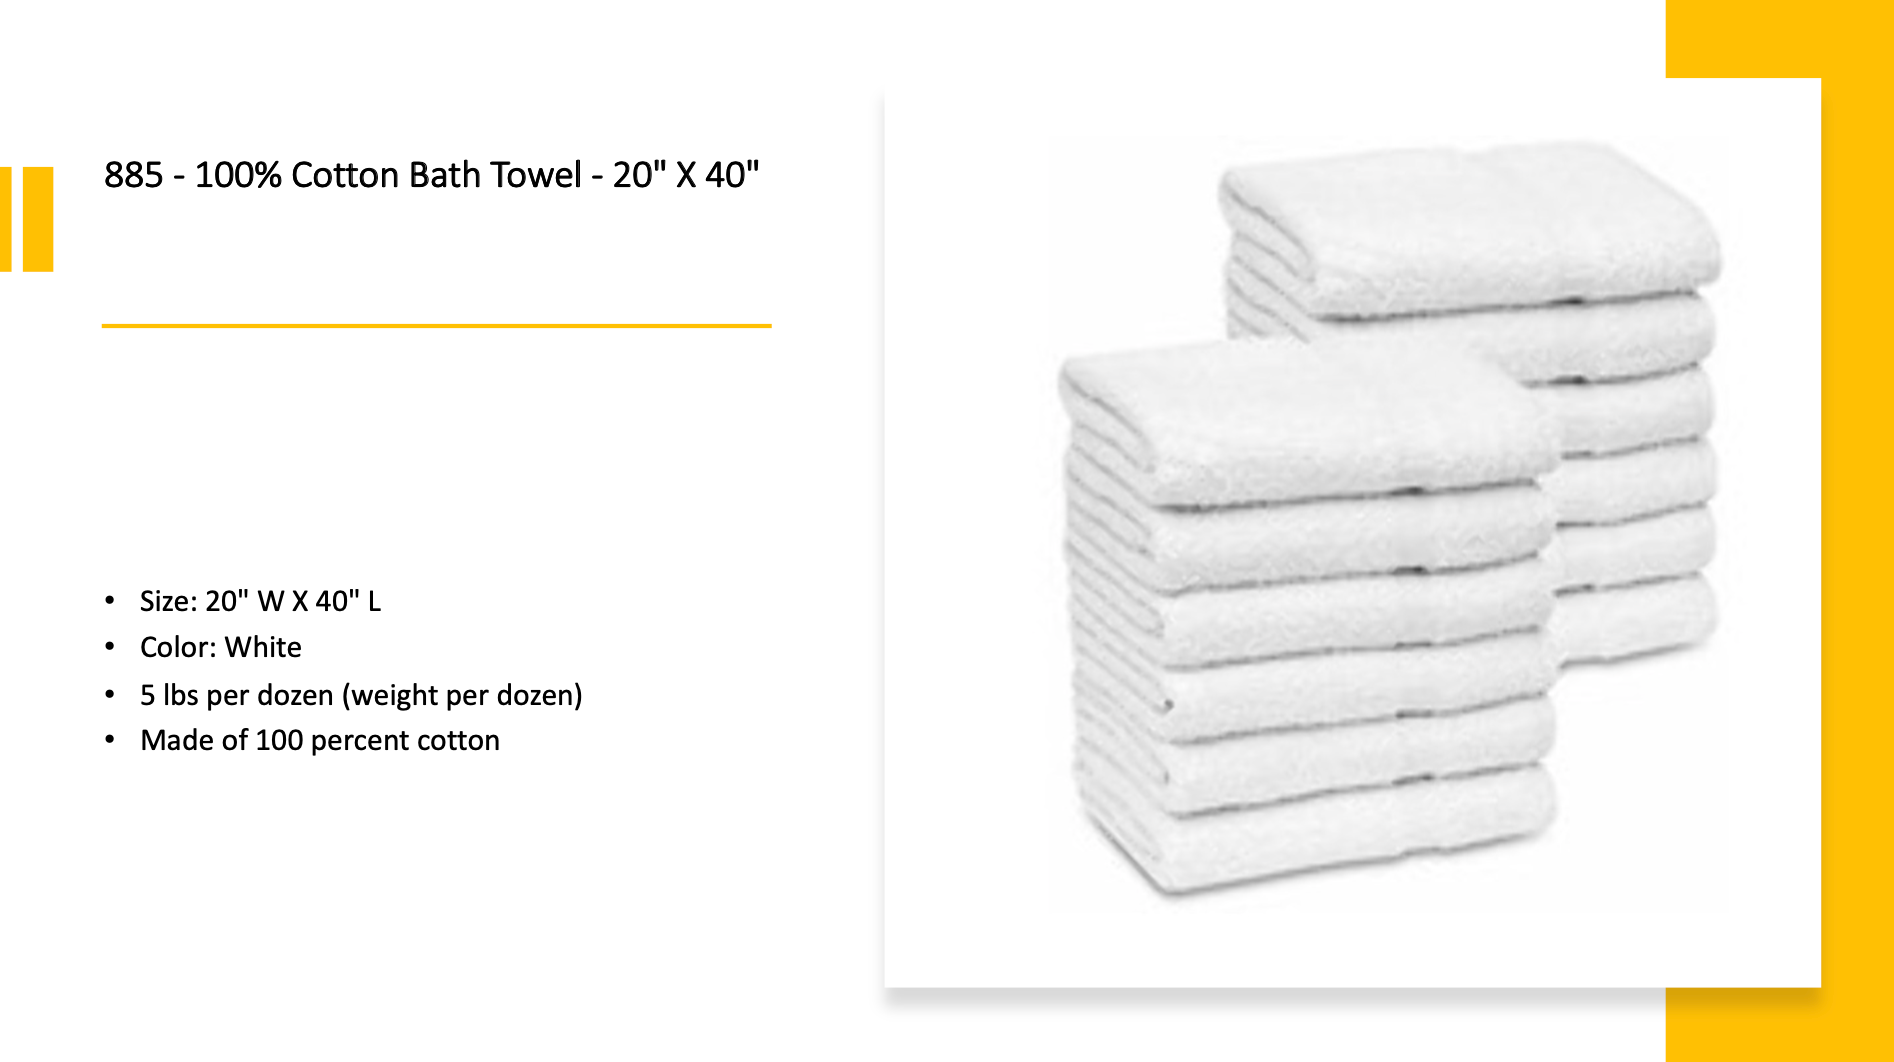 Bath towel - Cleaning Ideas 